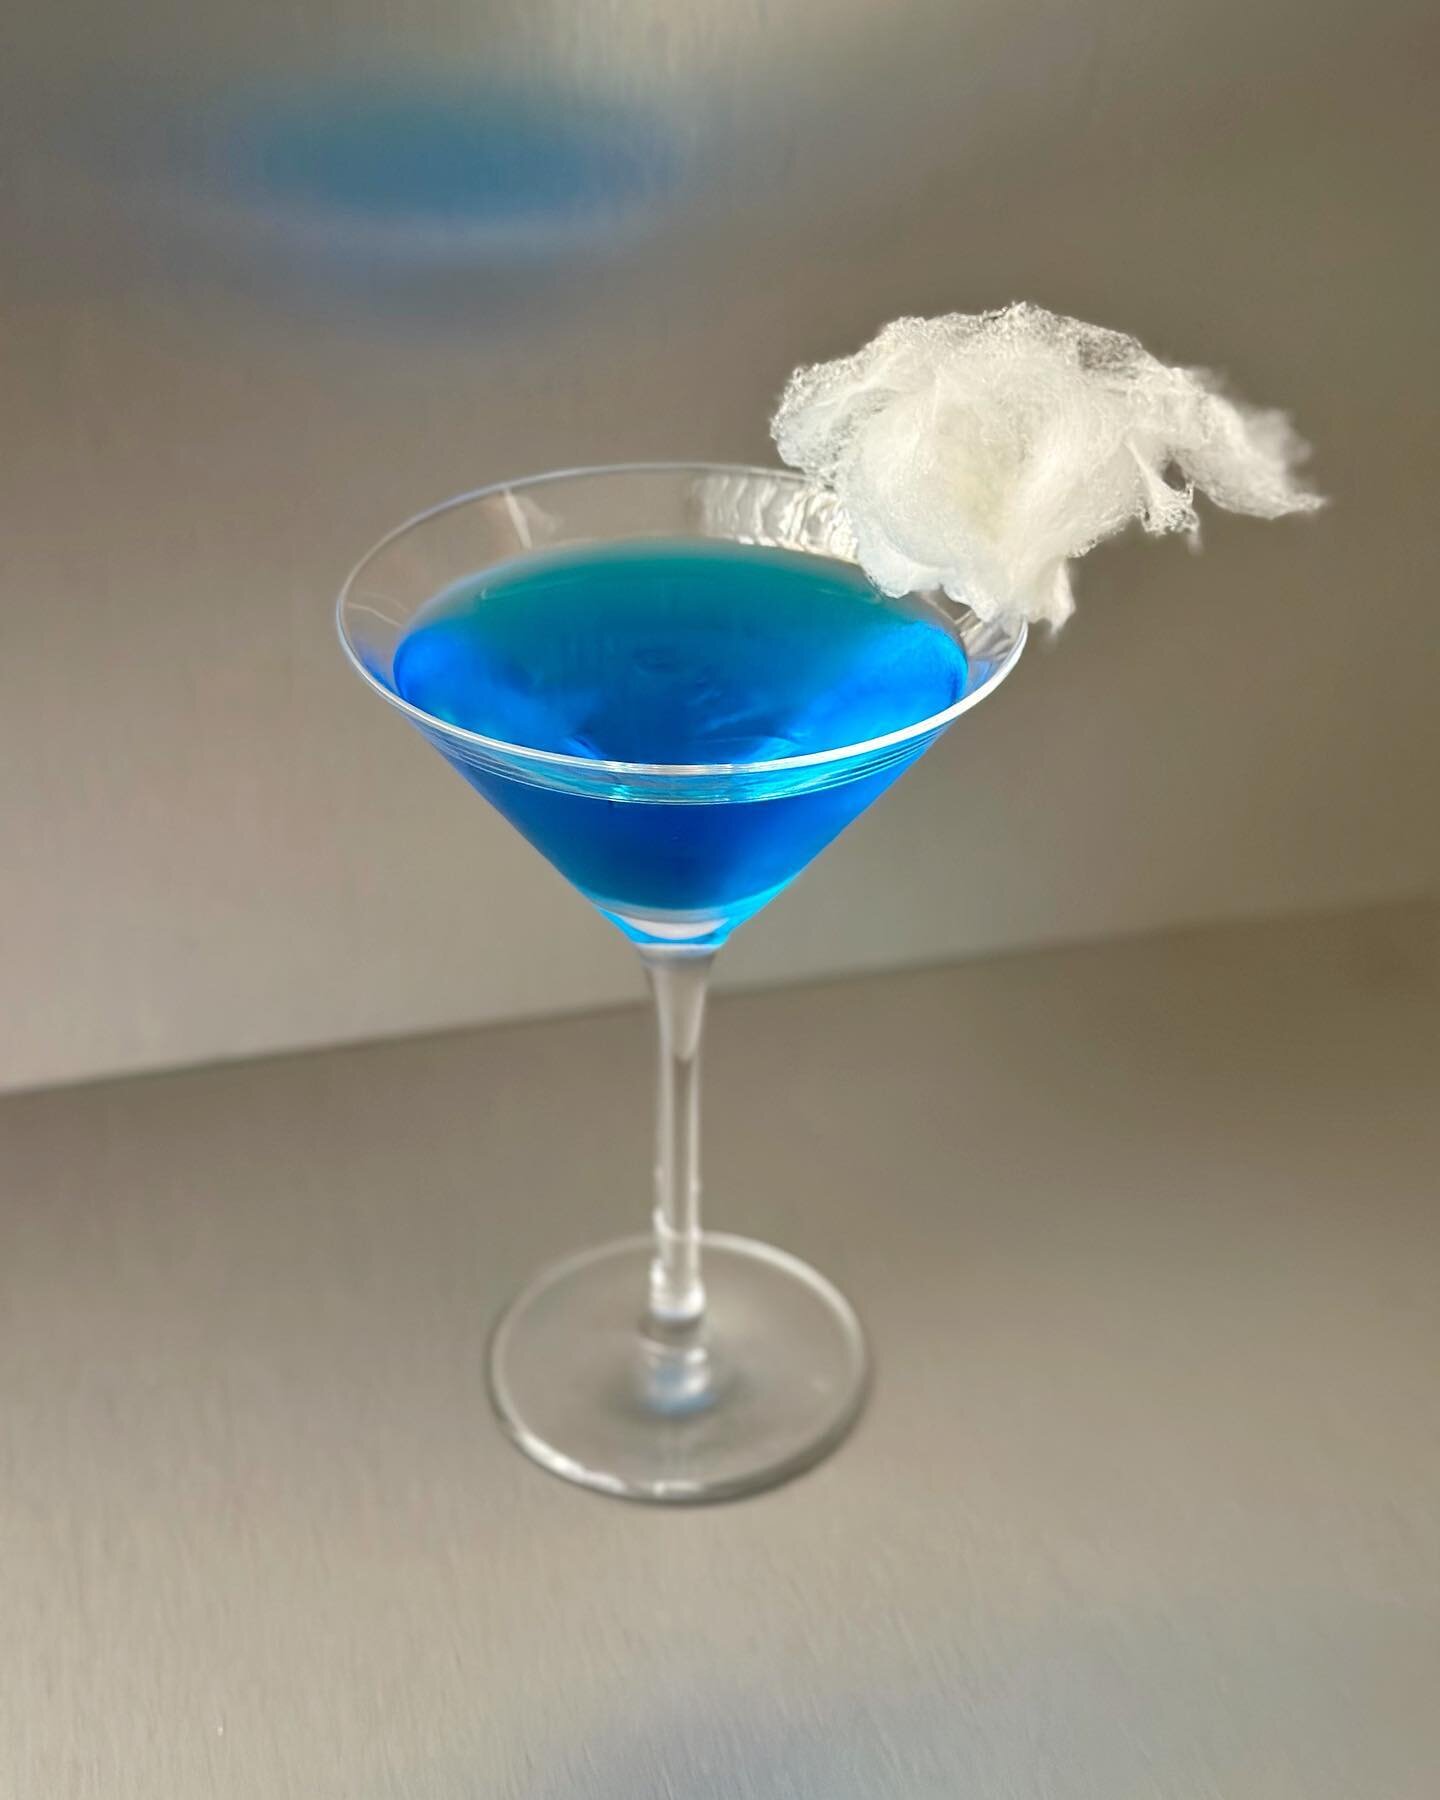 Blue Cloud Martini (Hpnotiq) 
Pruebas para el lanzamiento de colecci&oacute;n de uno de nuestros clientes .